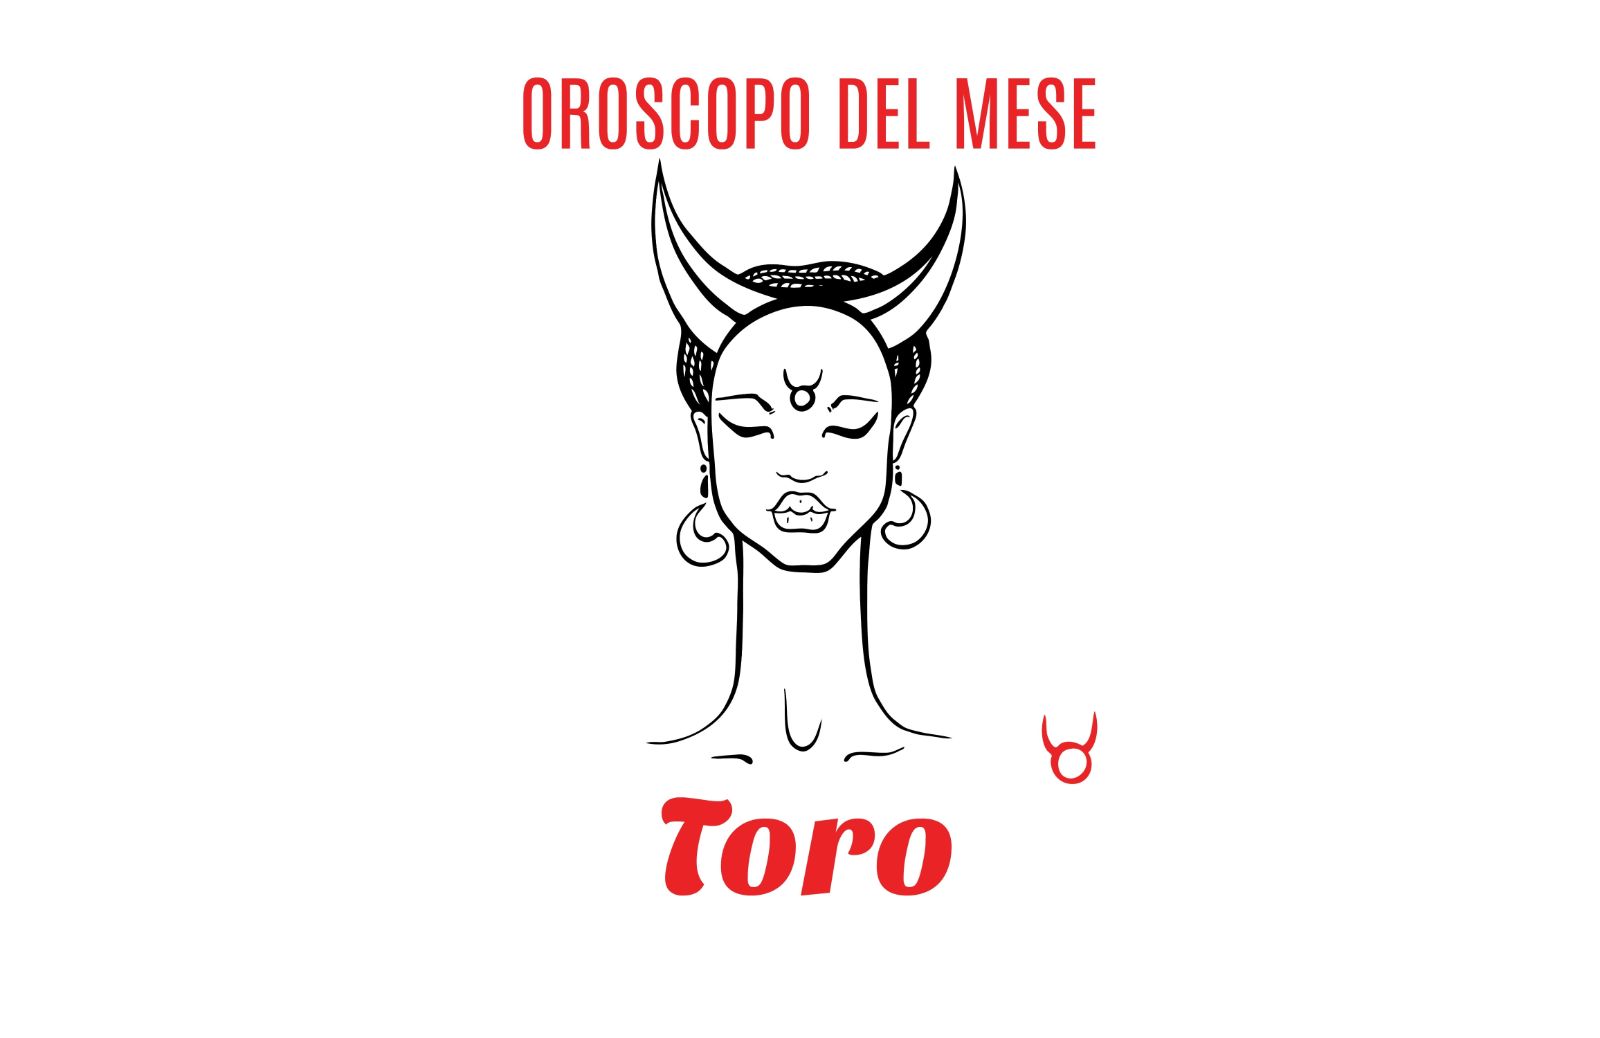 Oroscopo del mese: Toro - ottobre 2018